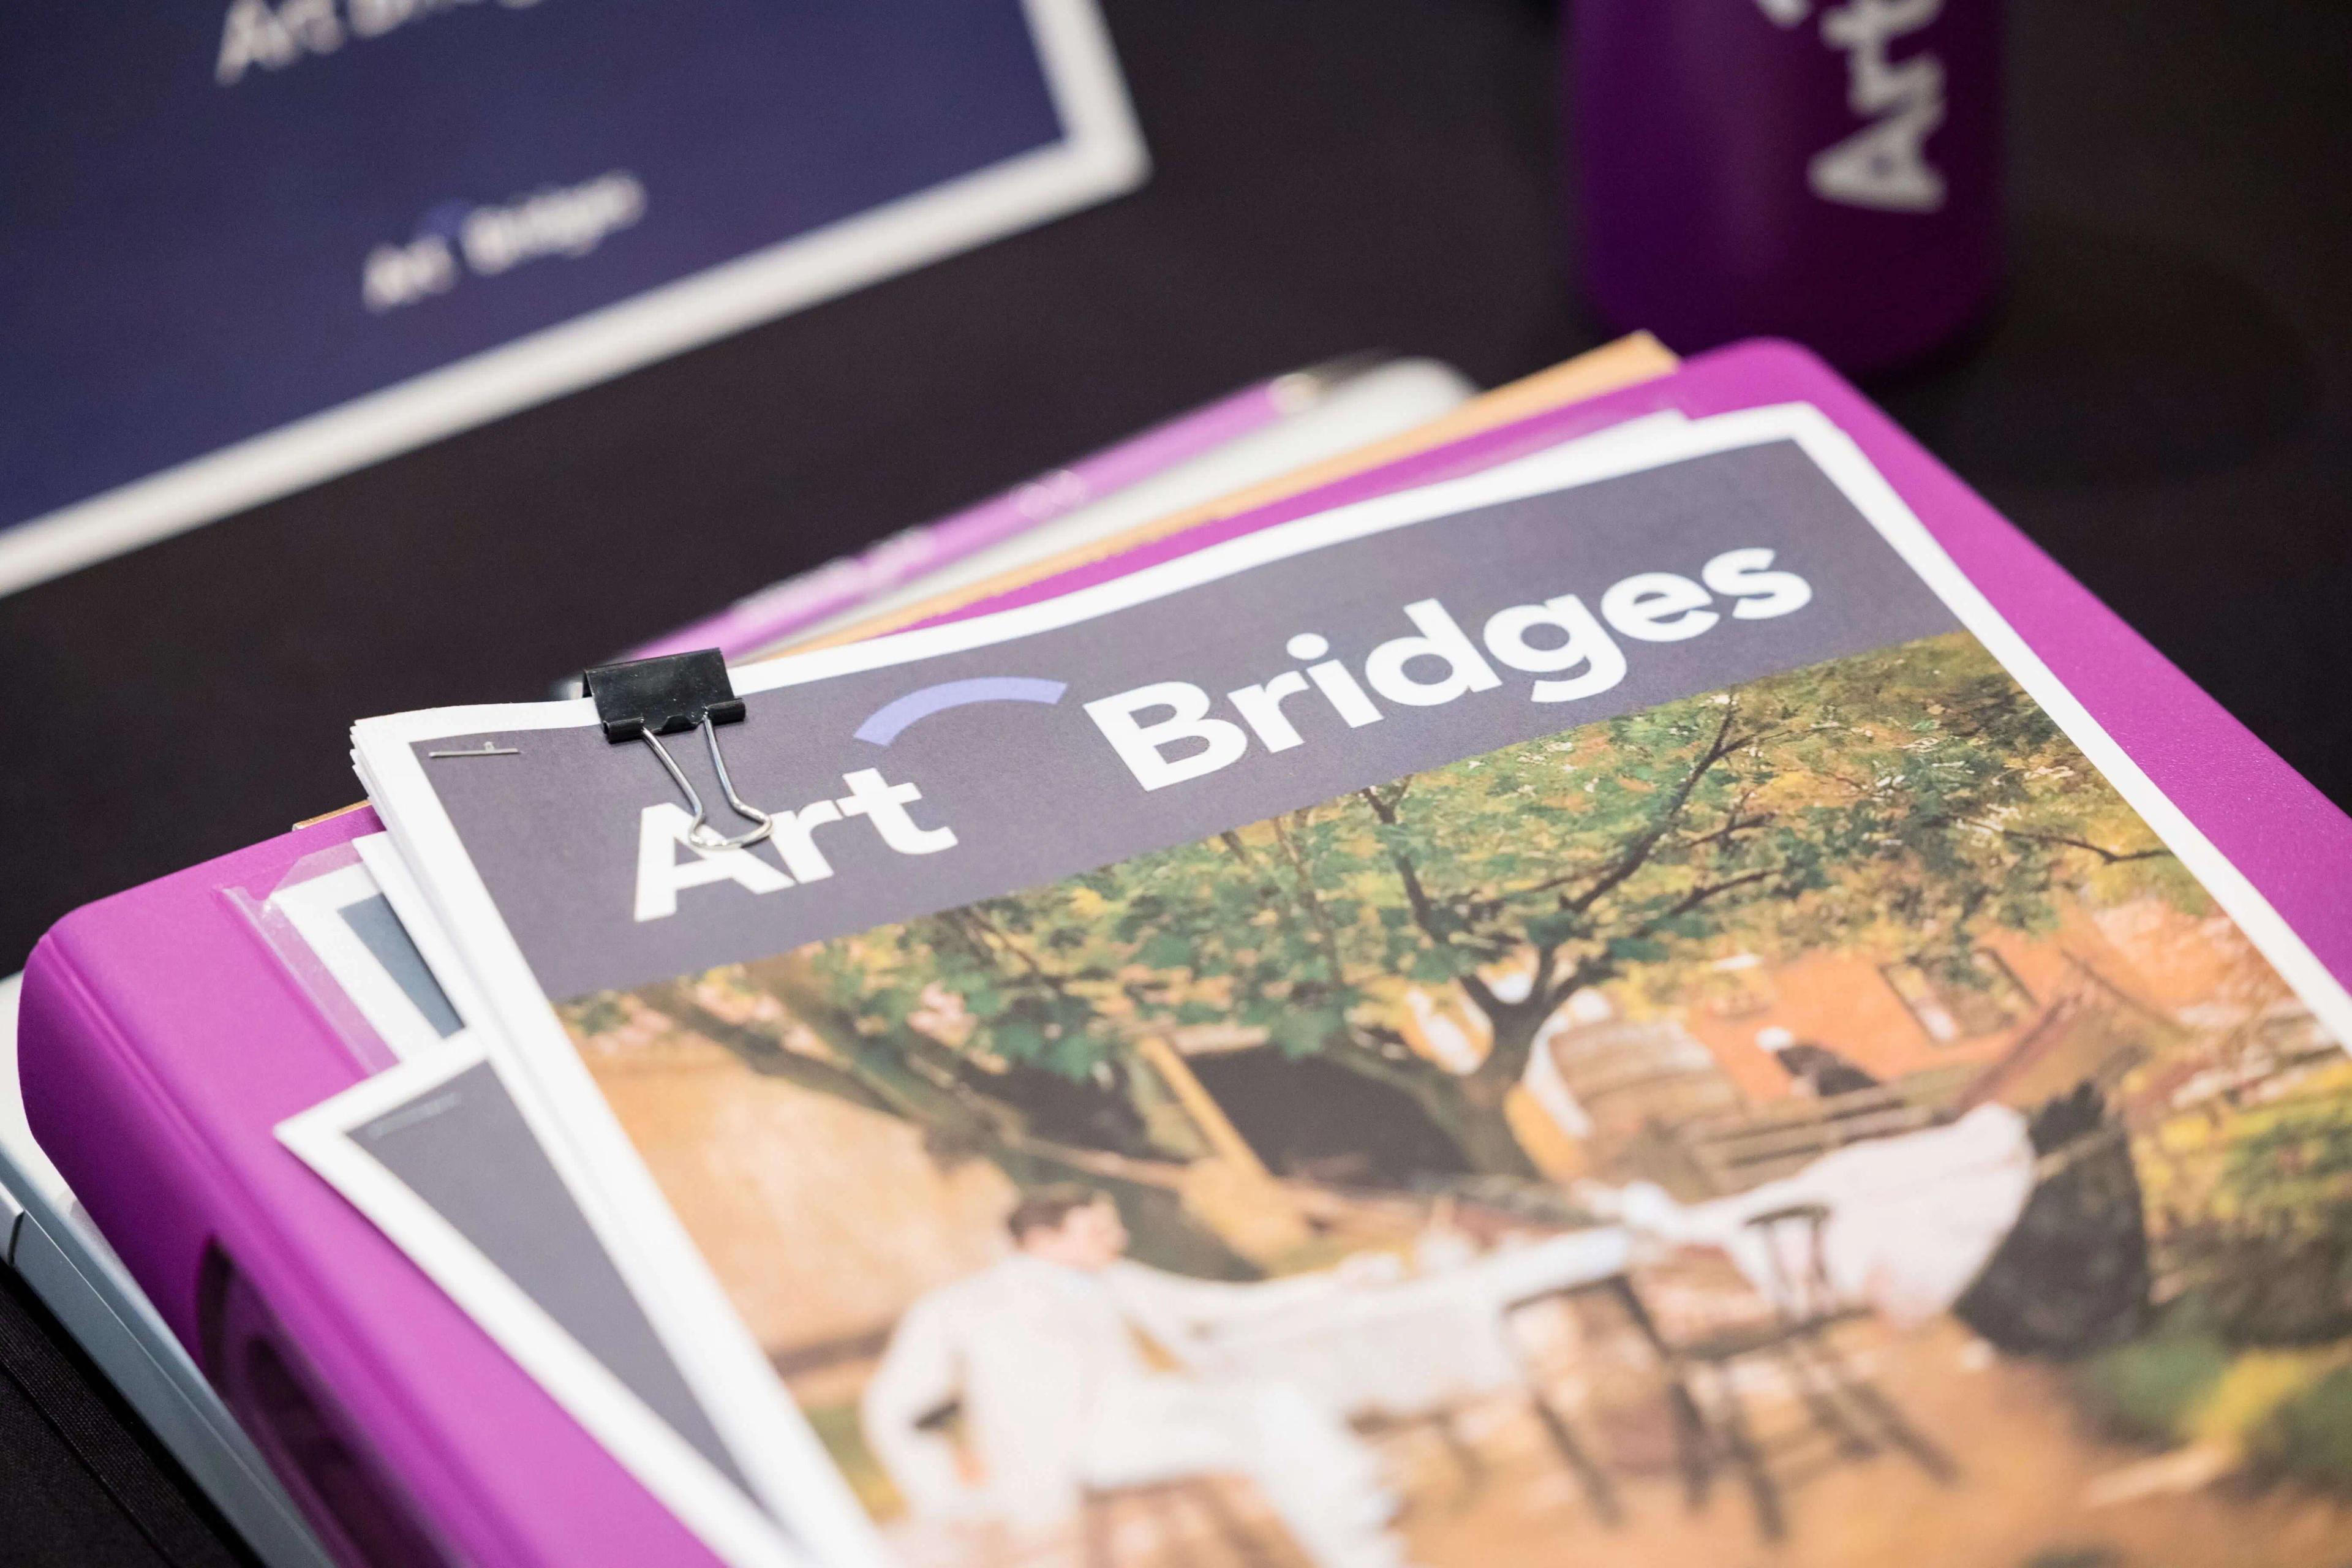 Art Bridges materials at a CLP Convening in April 2022